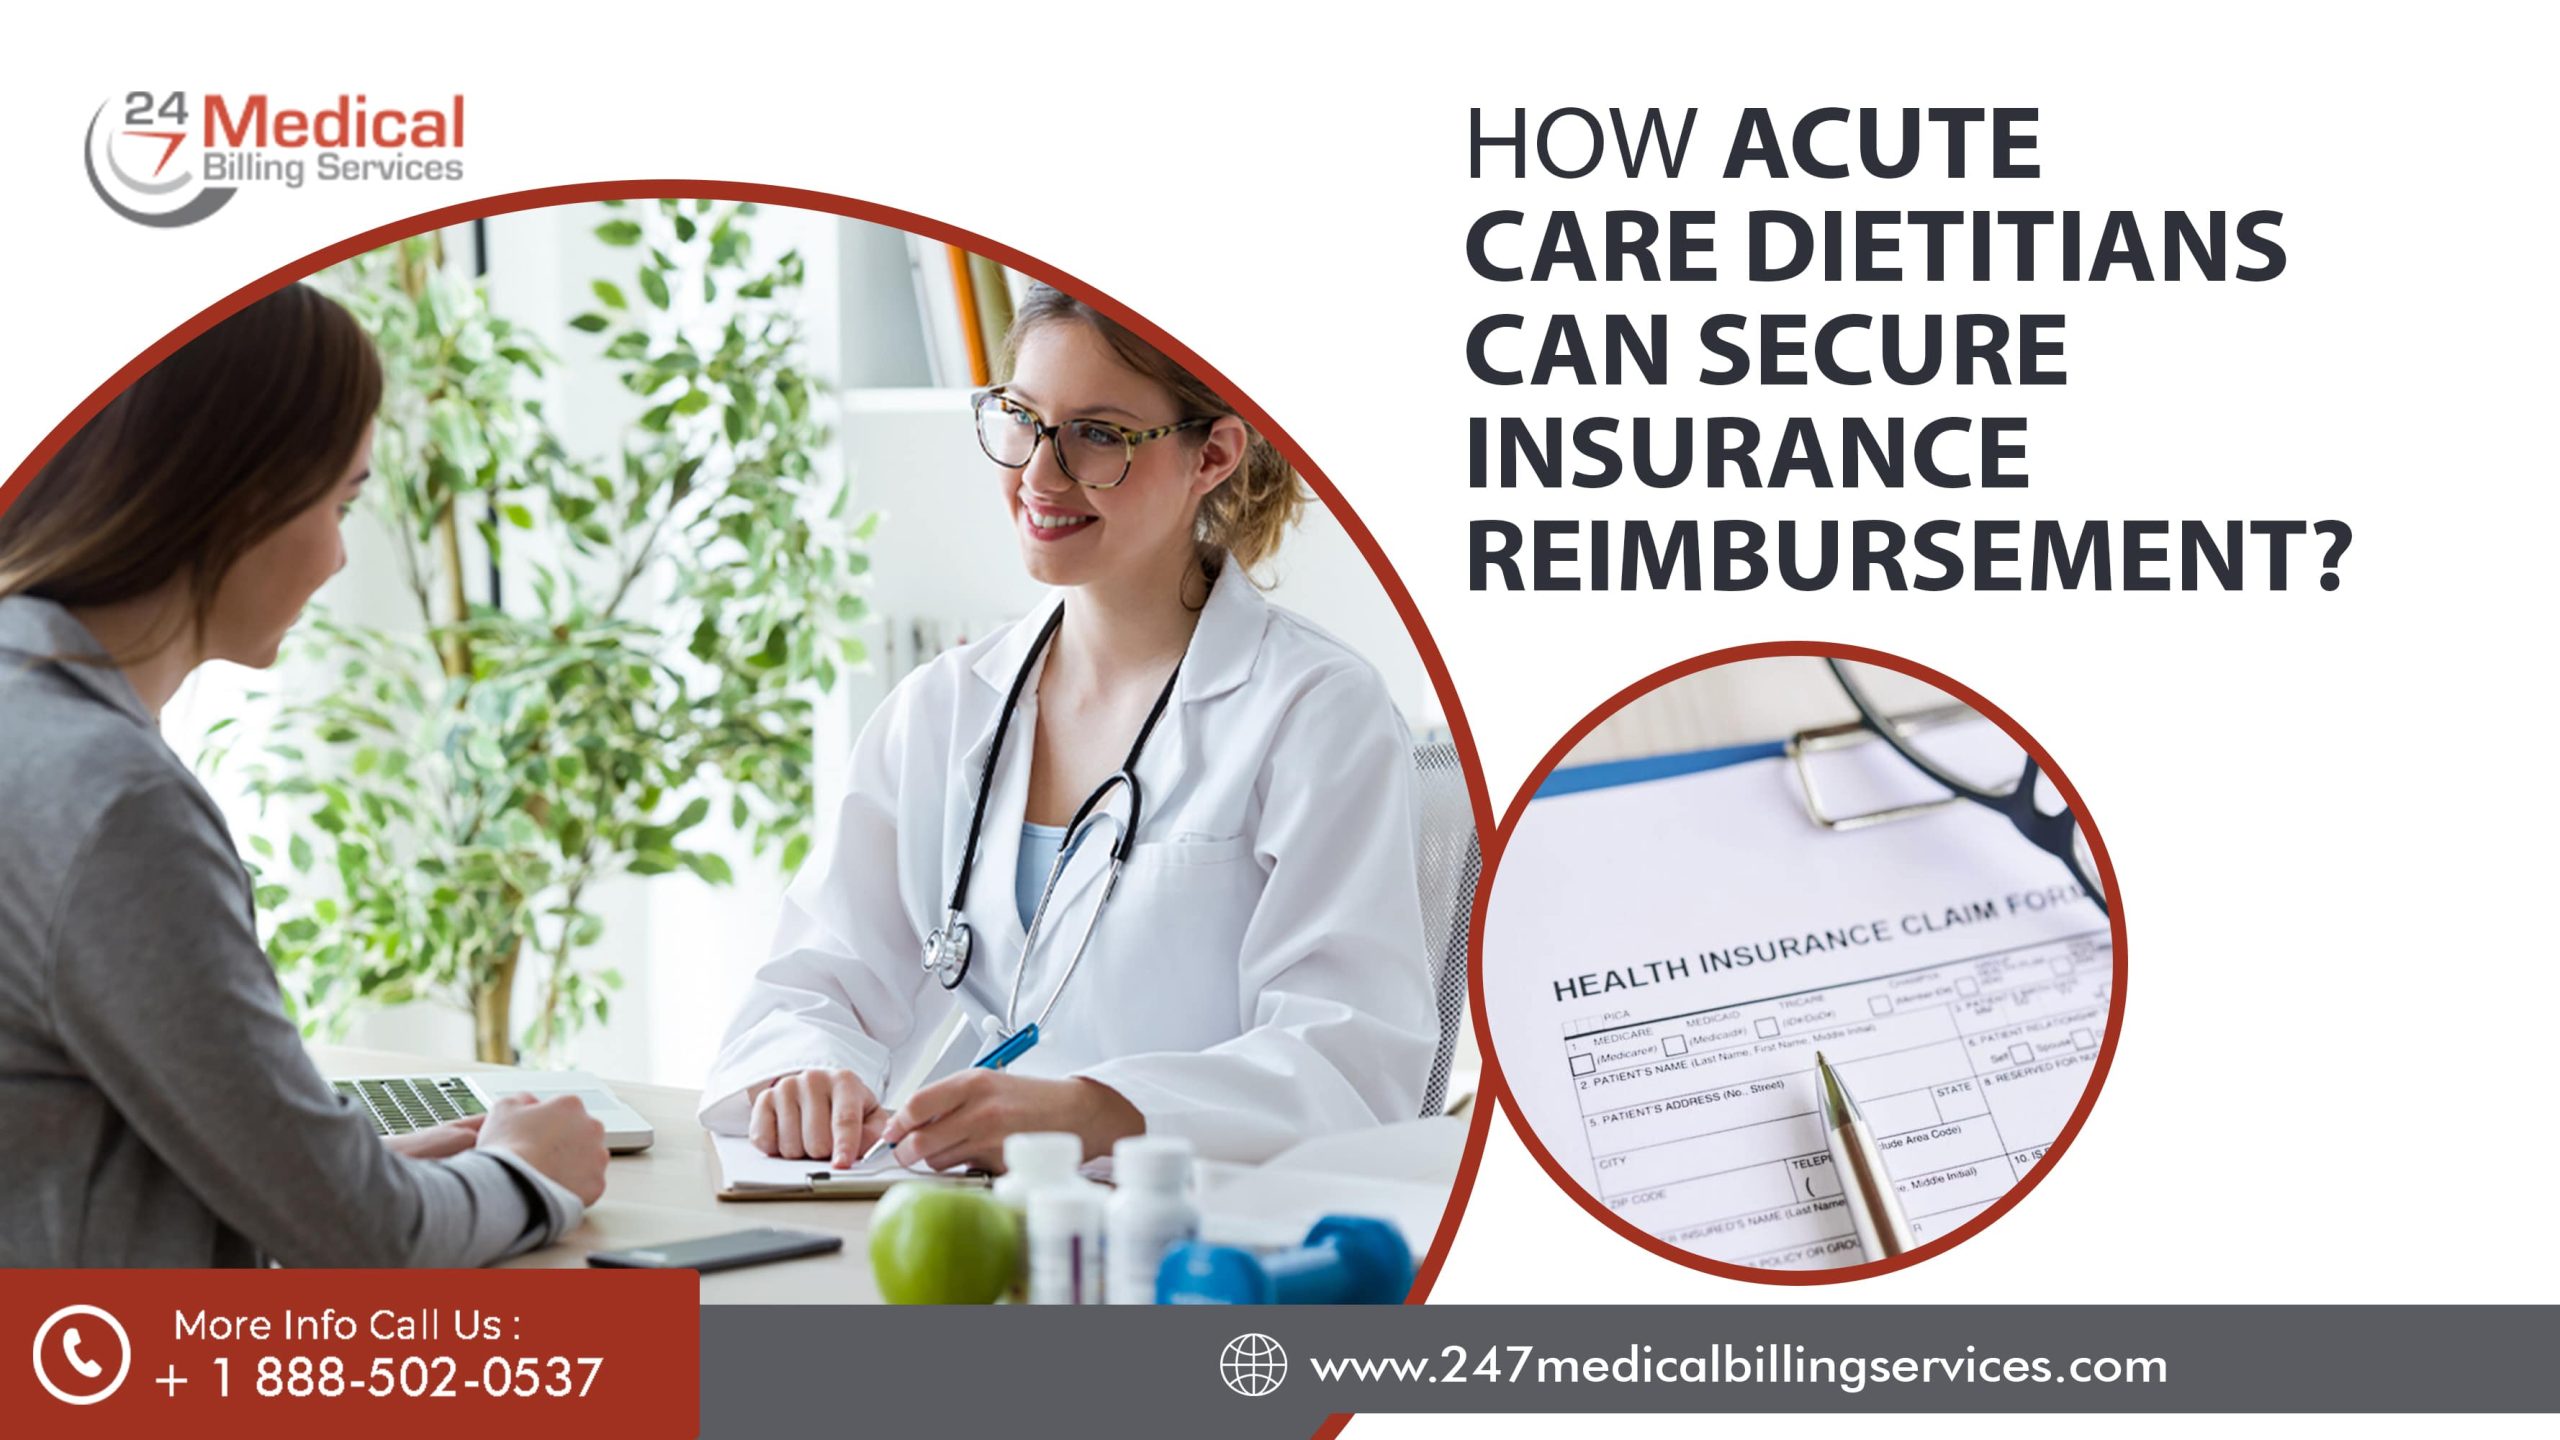 How Can Acute Care Dietitians Secure Insurance Reimbursement